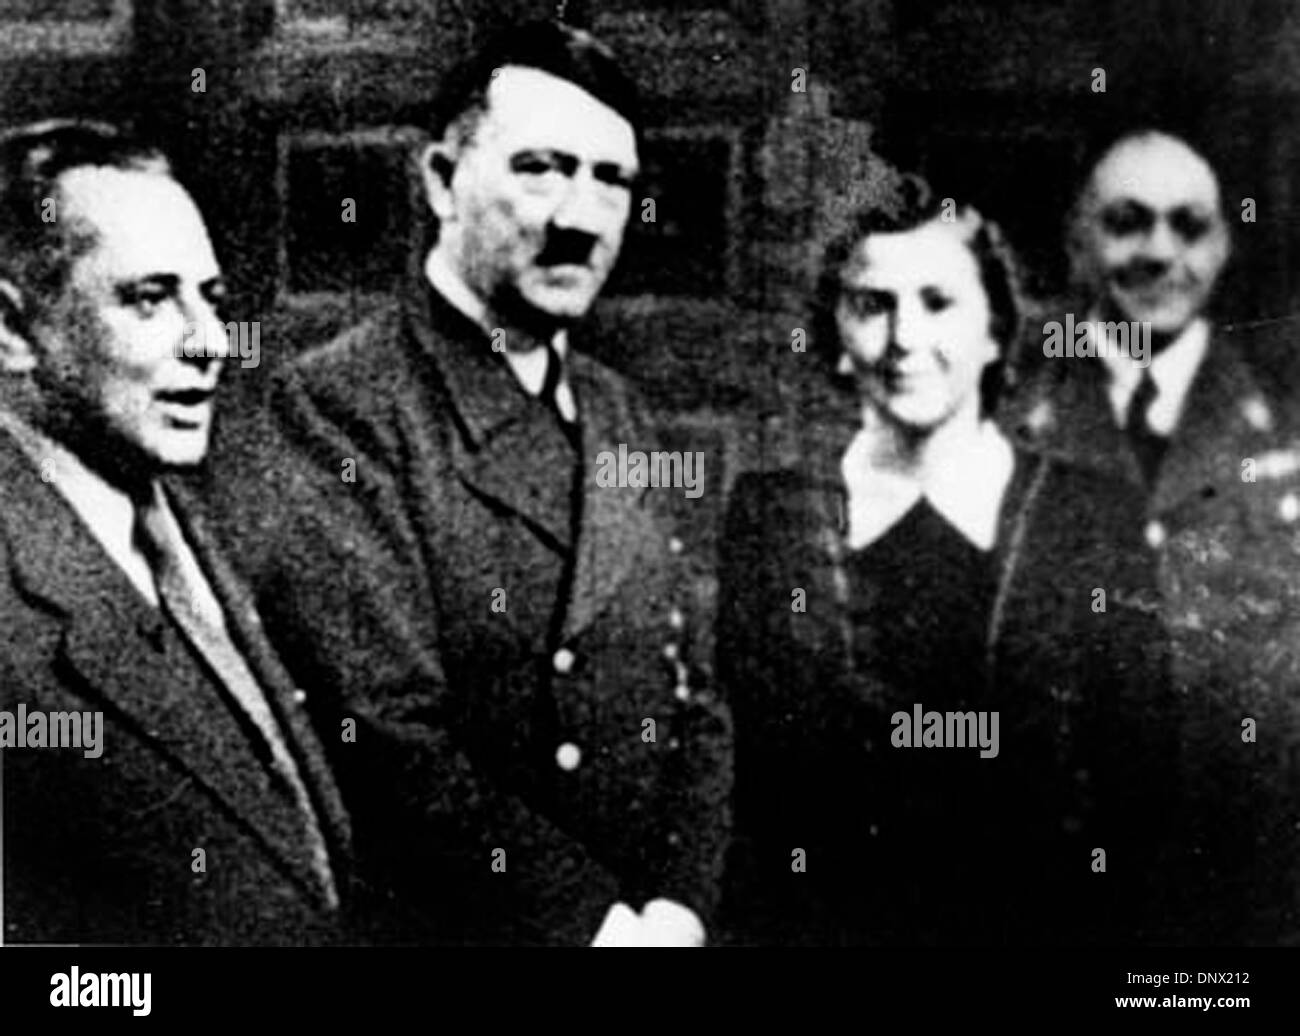 Abril 20, 1938 - Berlín, Alemania - Adolf Hitler en su fiesta de cumpleaños con Heinrich Hoffman, Eva Braun y prof. MORELL. Adolf Hitler (20 de abril de 1889 ÐApril 30, 1945) fue el Fuhrer (Líder y canciller imperial) de Alemania desde 1933 hasta su muerte. Él era el líder del Partido Nacional Socialista de los Trabajadores Alemanes (NSDAP), mejor conocido como el Partido Nazi. En el apogeo de su poder, el Foto de stock